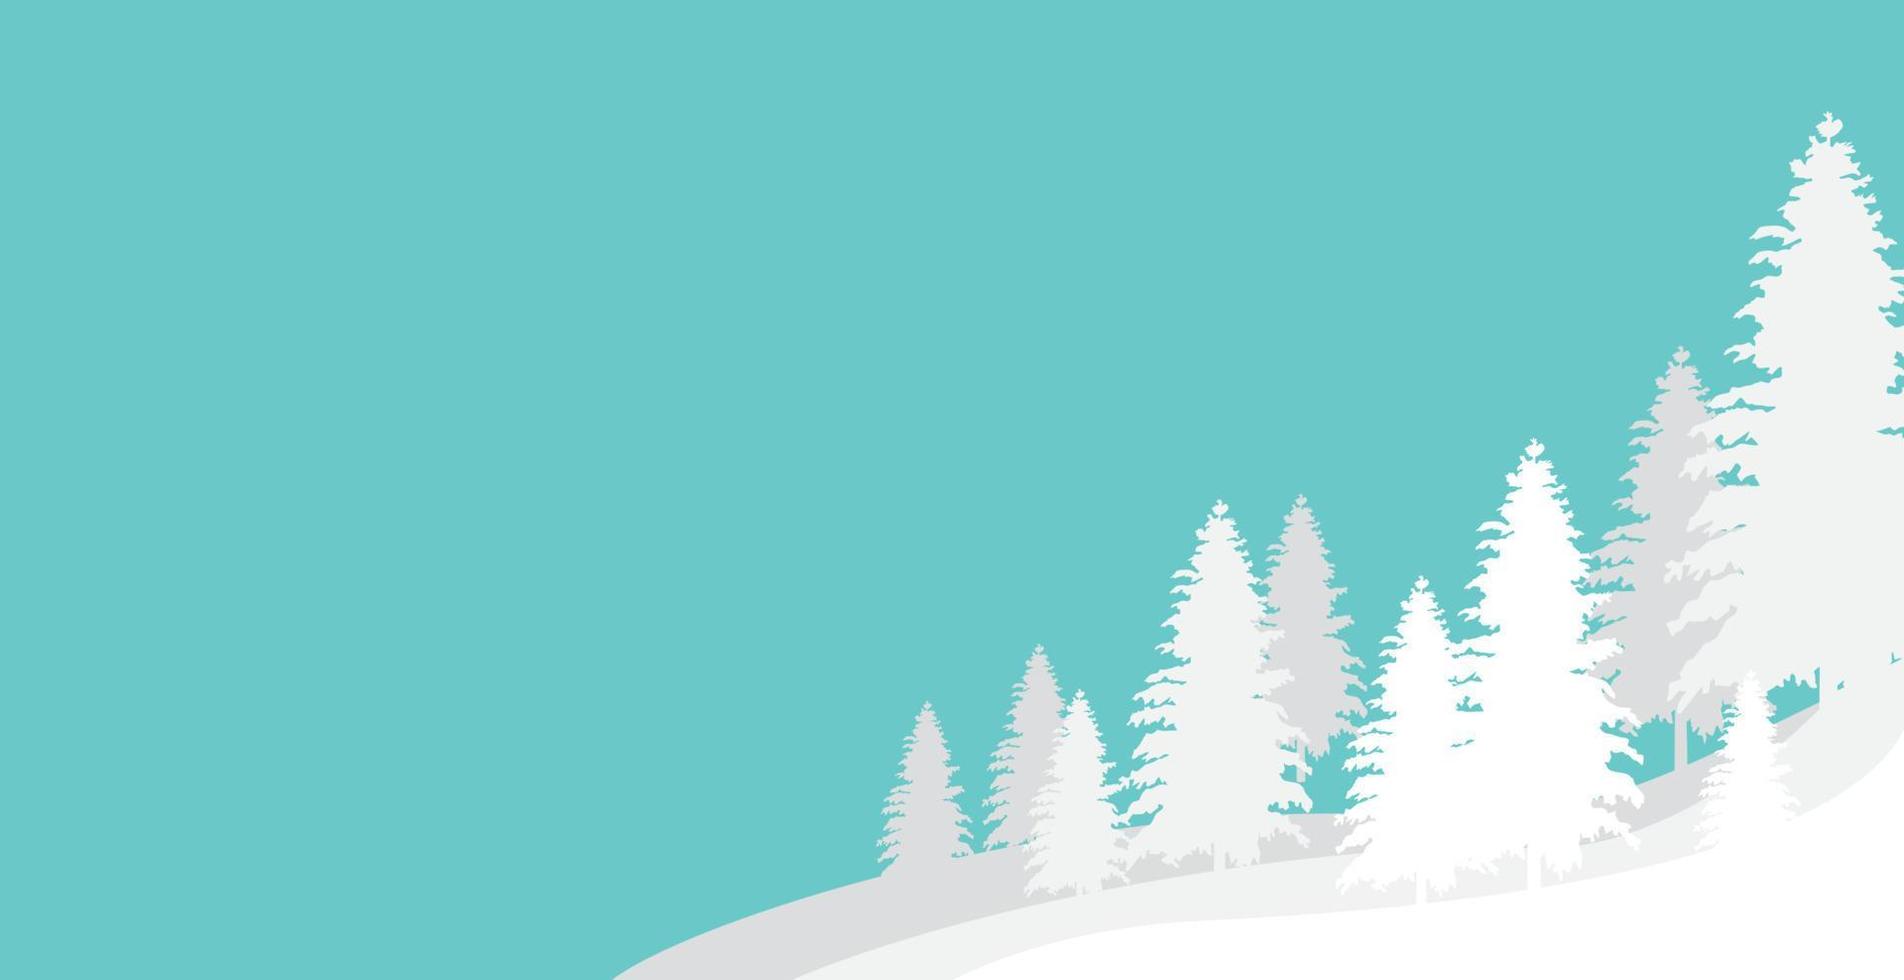 sfondo del paesaggio invernale. illustrazione vettoriale piatto. stile di sfondo semplice